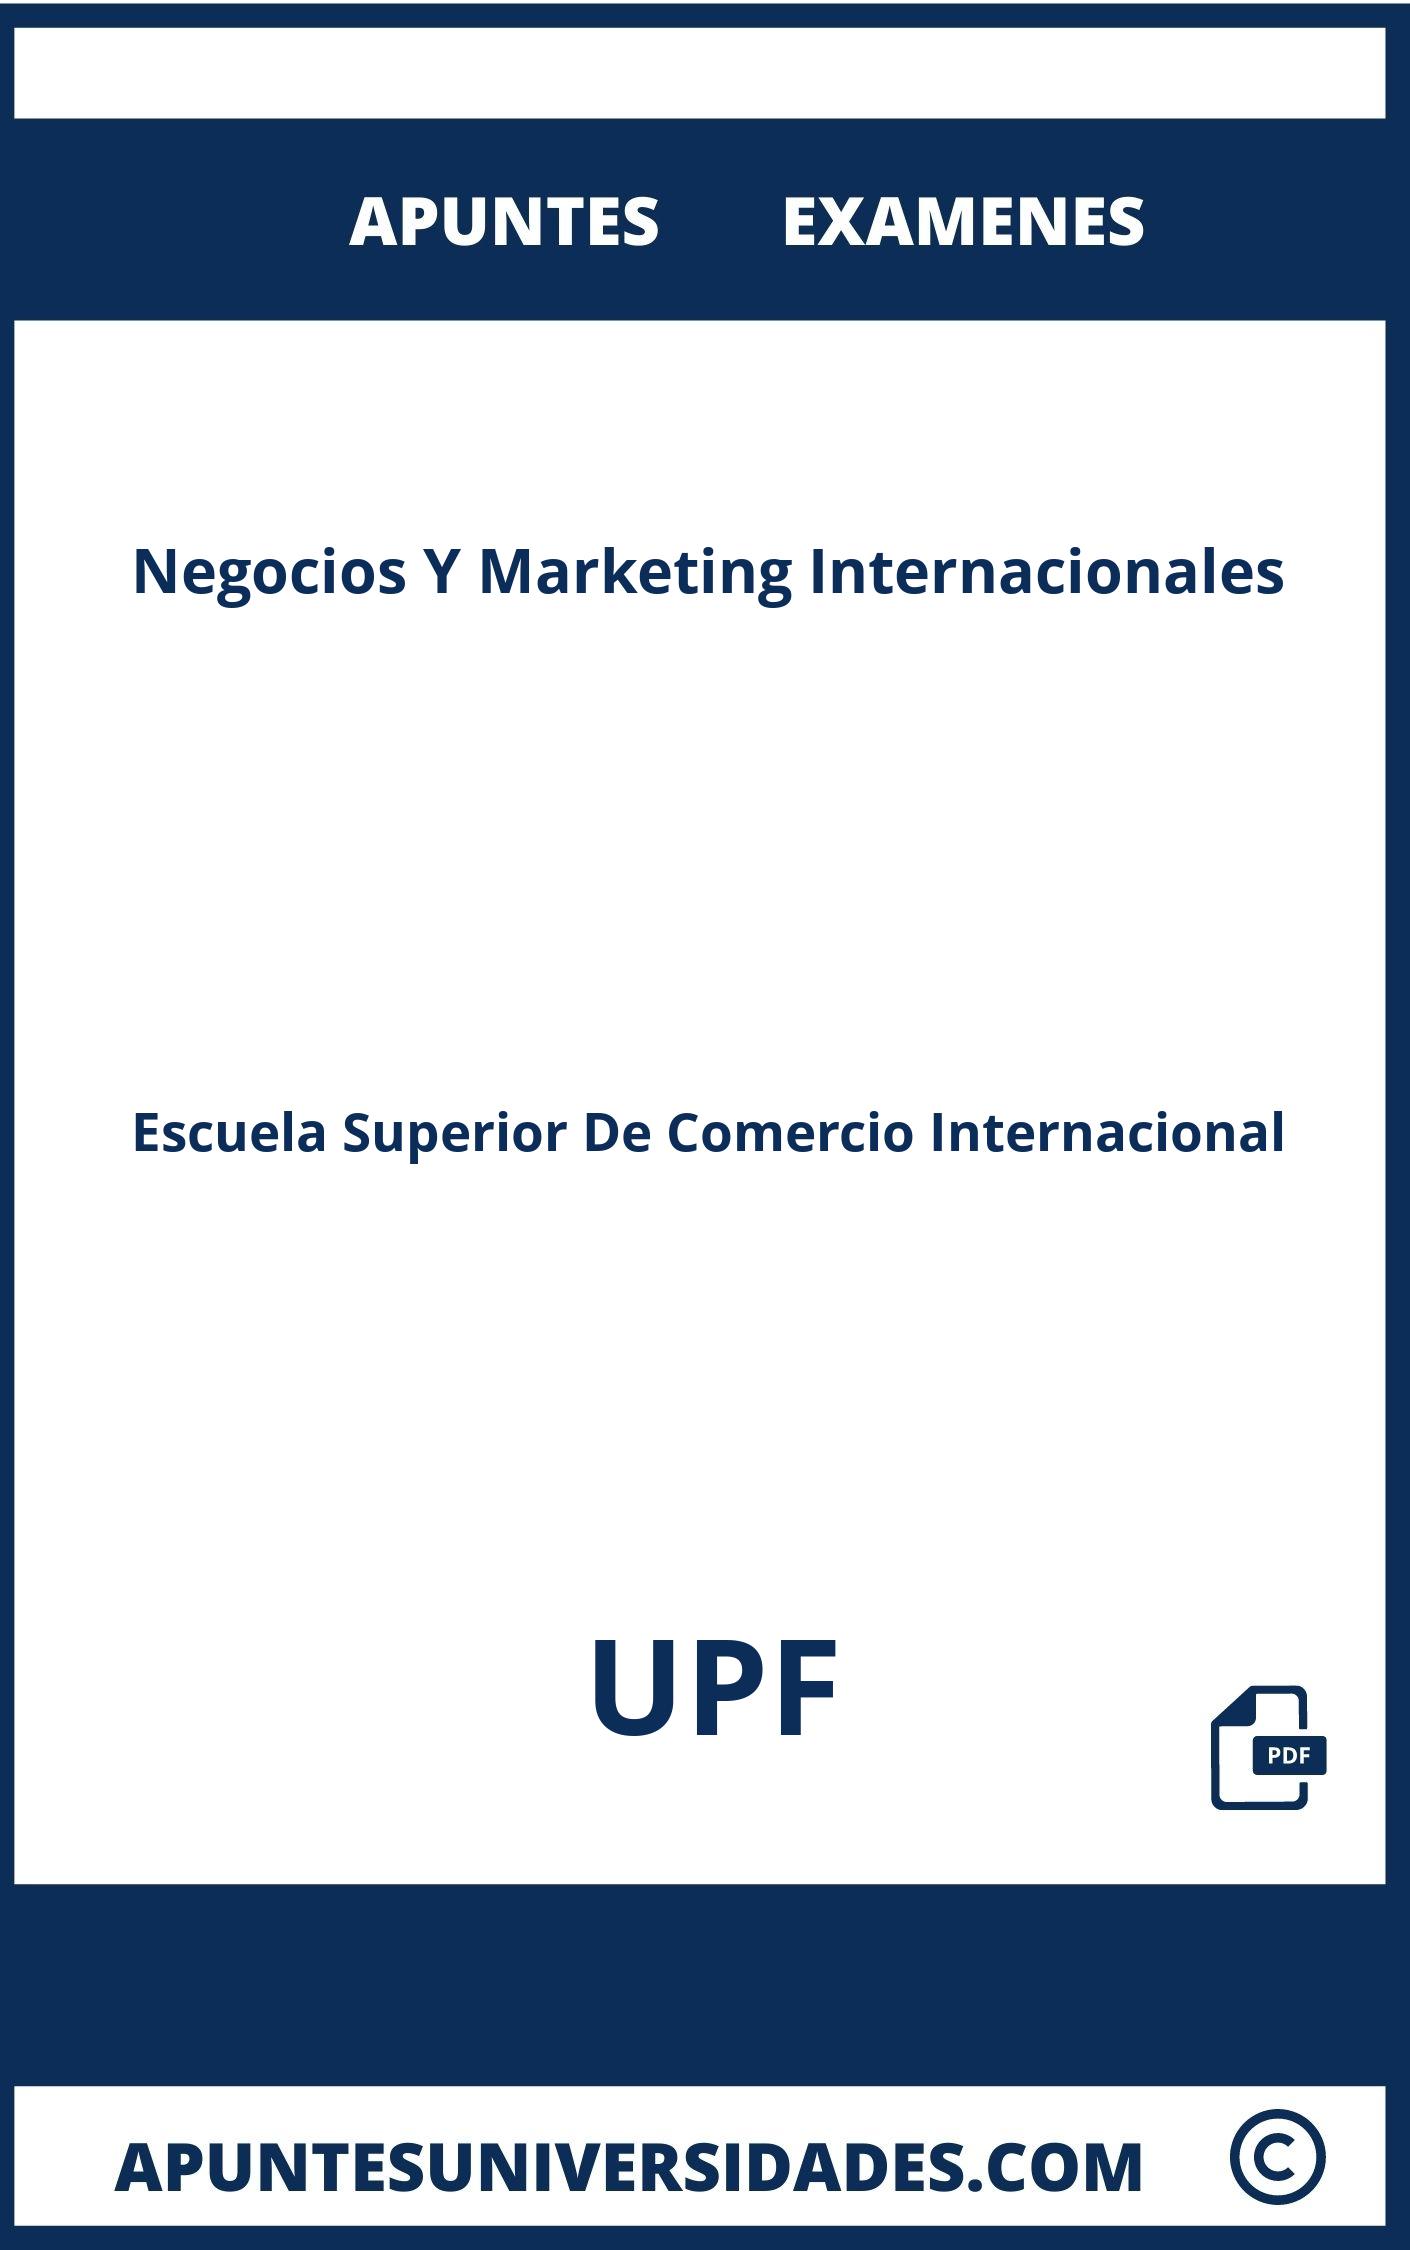 Apuntes Examenes Negocios Y Marketing Internacionales UPF